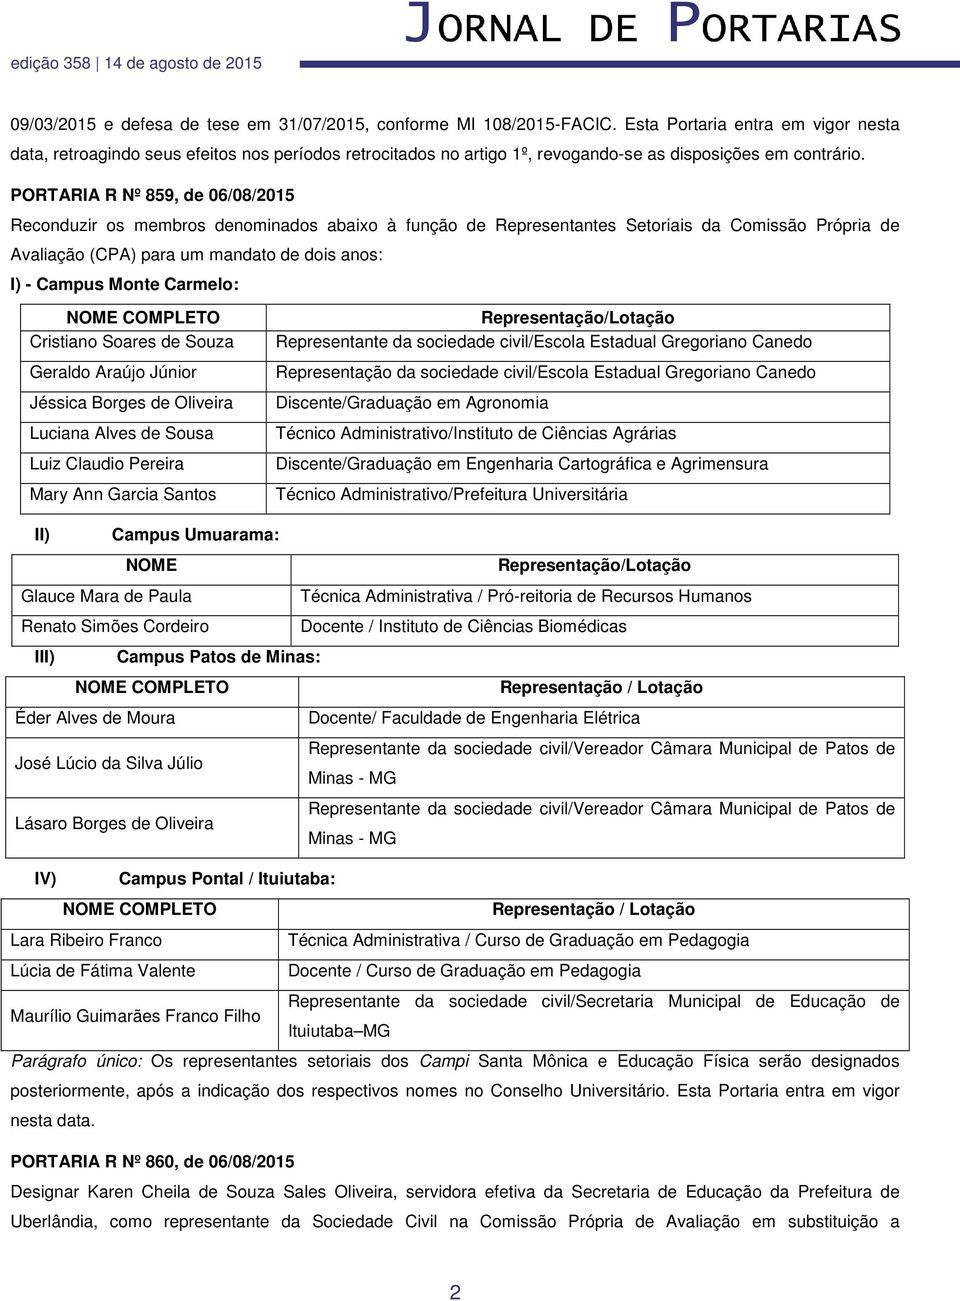 PORTARIA R Nº 859, de 06/08/2015 Reconduzir os membros denominados abaixo à função de Representantes Setoriais da Comissão Própria de Avaliação (CPA) para um mandato de dois anos: I) - Campus Monte